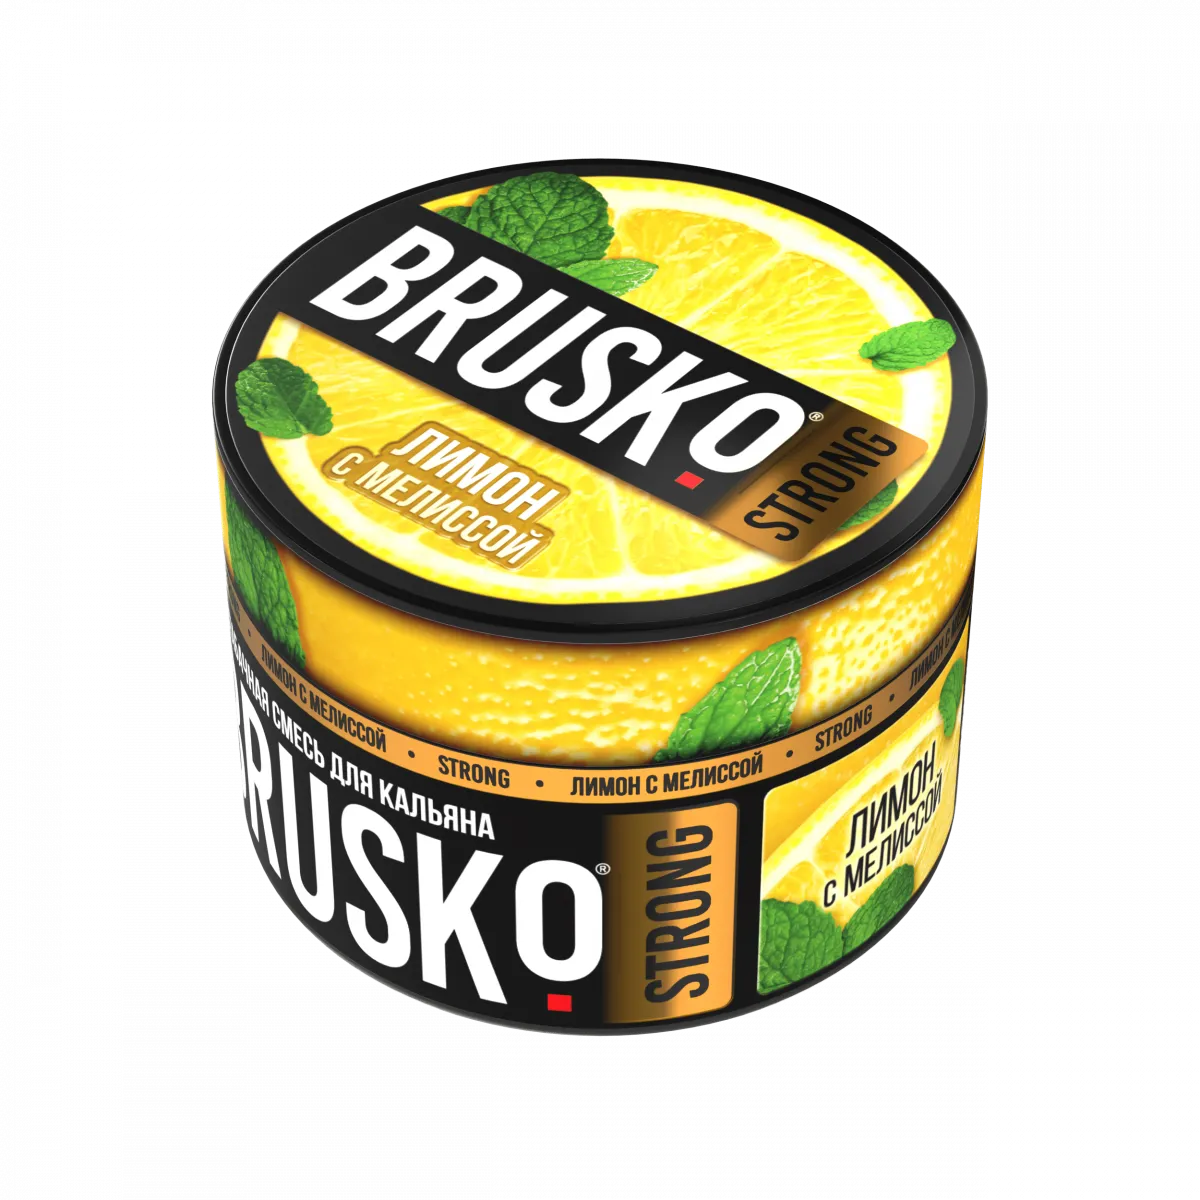 Бруско манго апельсин мята. Бестабачная смесь brusko Zero маракуйя, 50г. Brusko Medium 50g - манго с маракуйей.